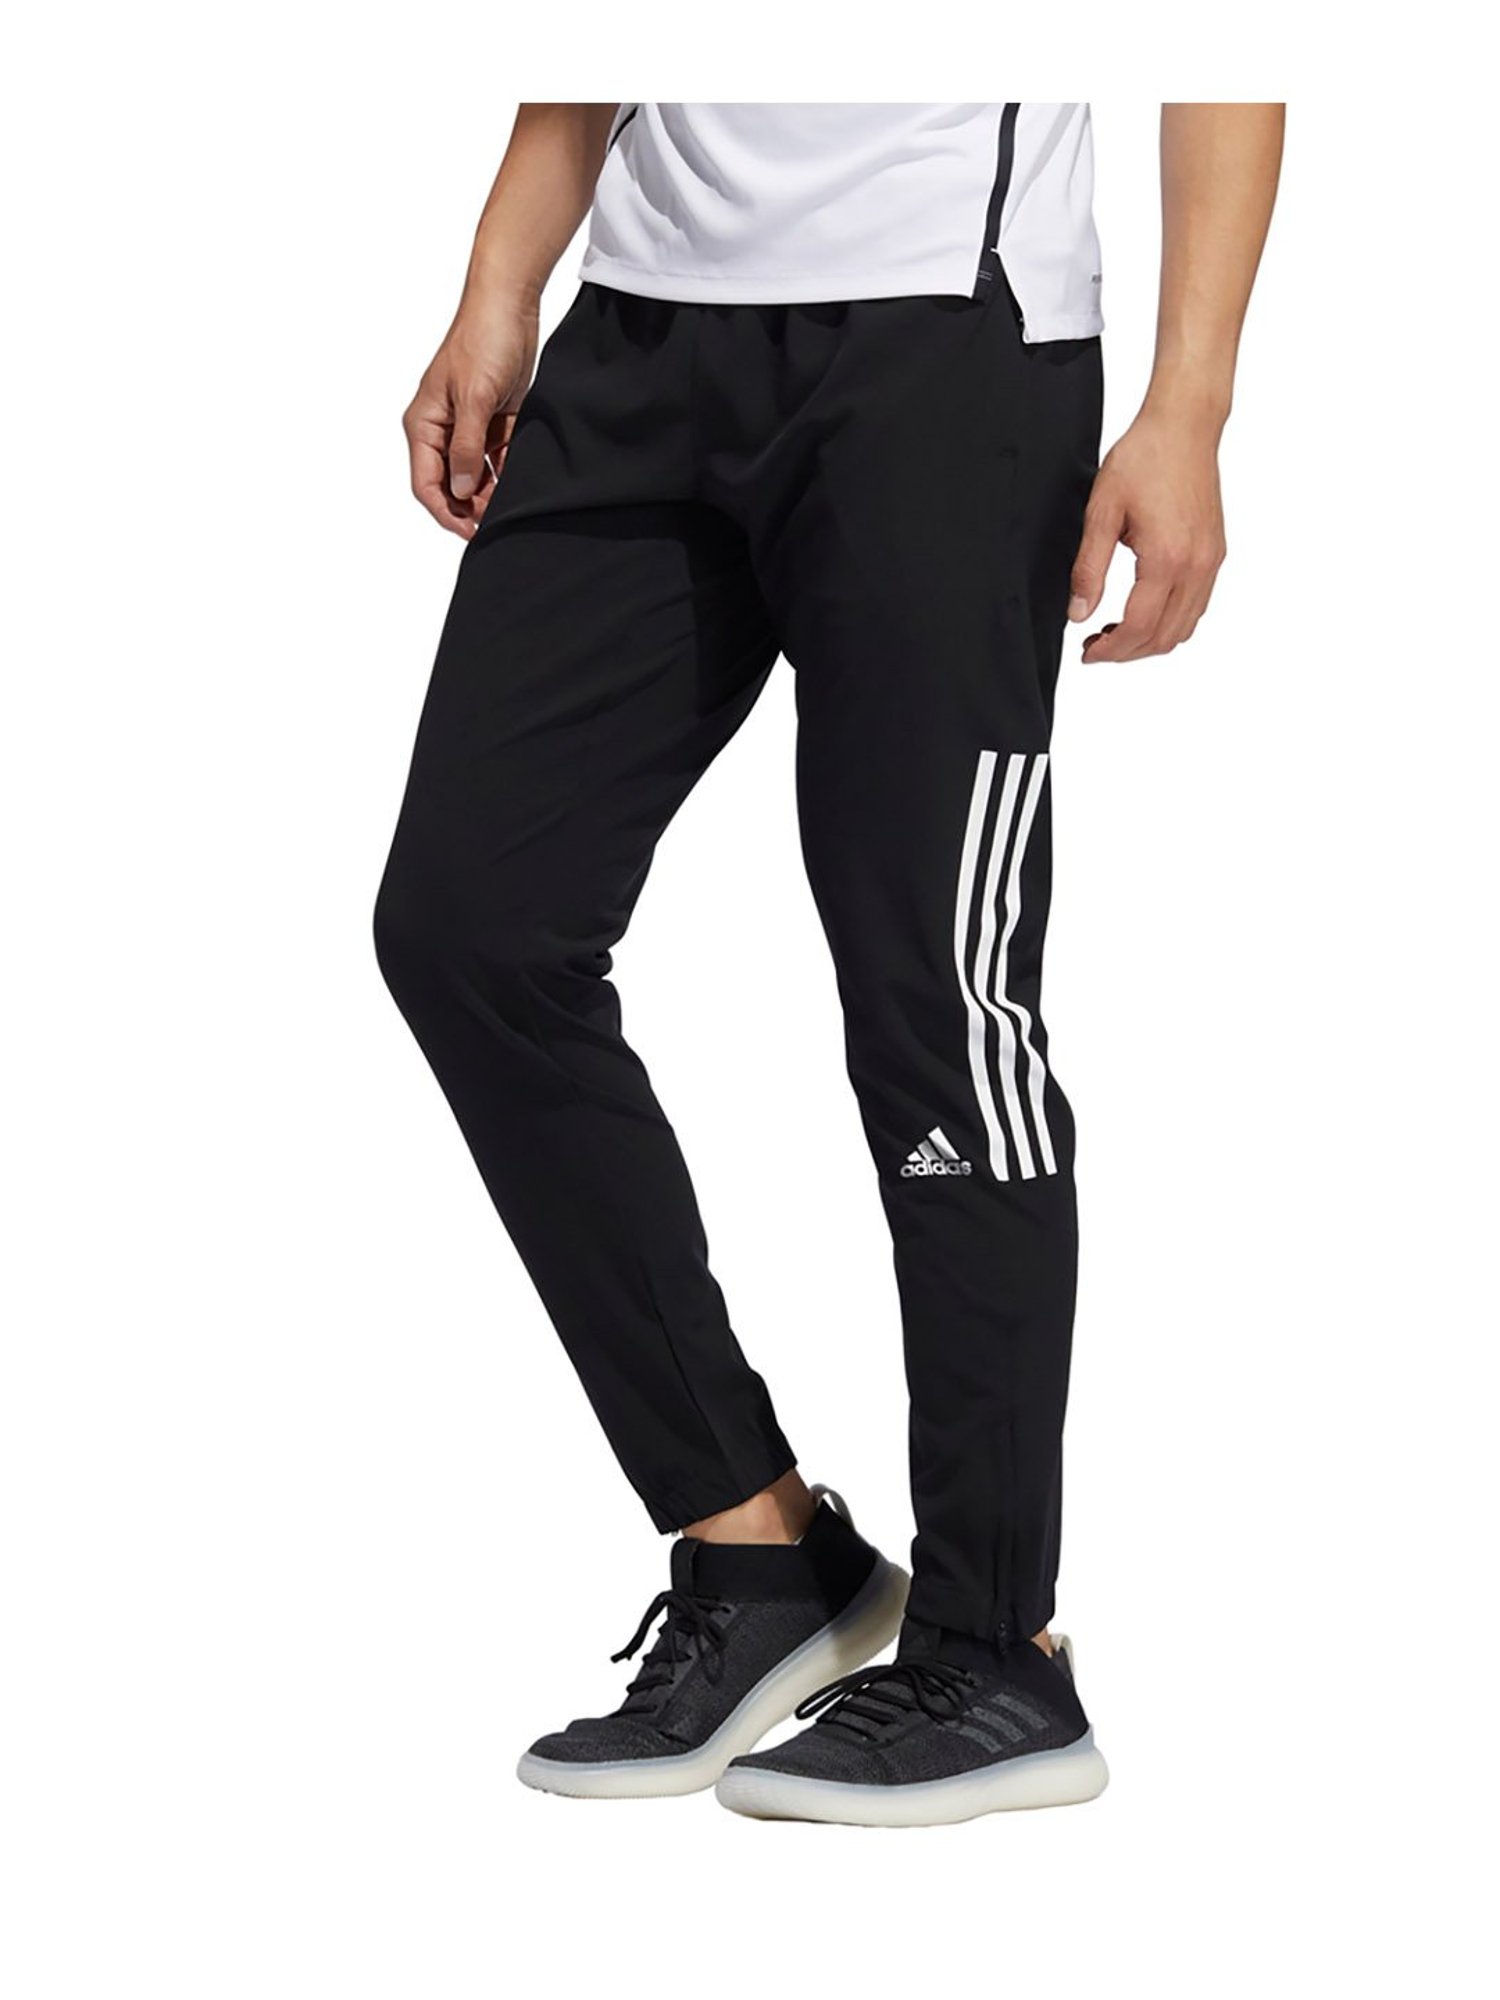 Buy Adidas Originals Black Slim Fit Joggers for Mens Online  Tata CLiQ